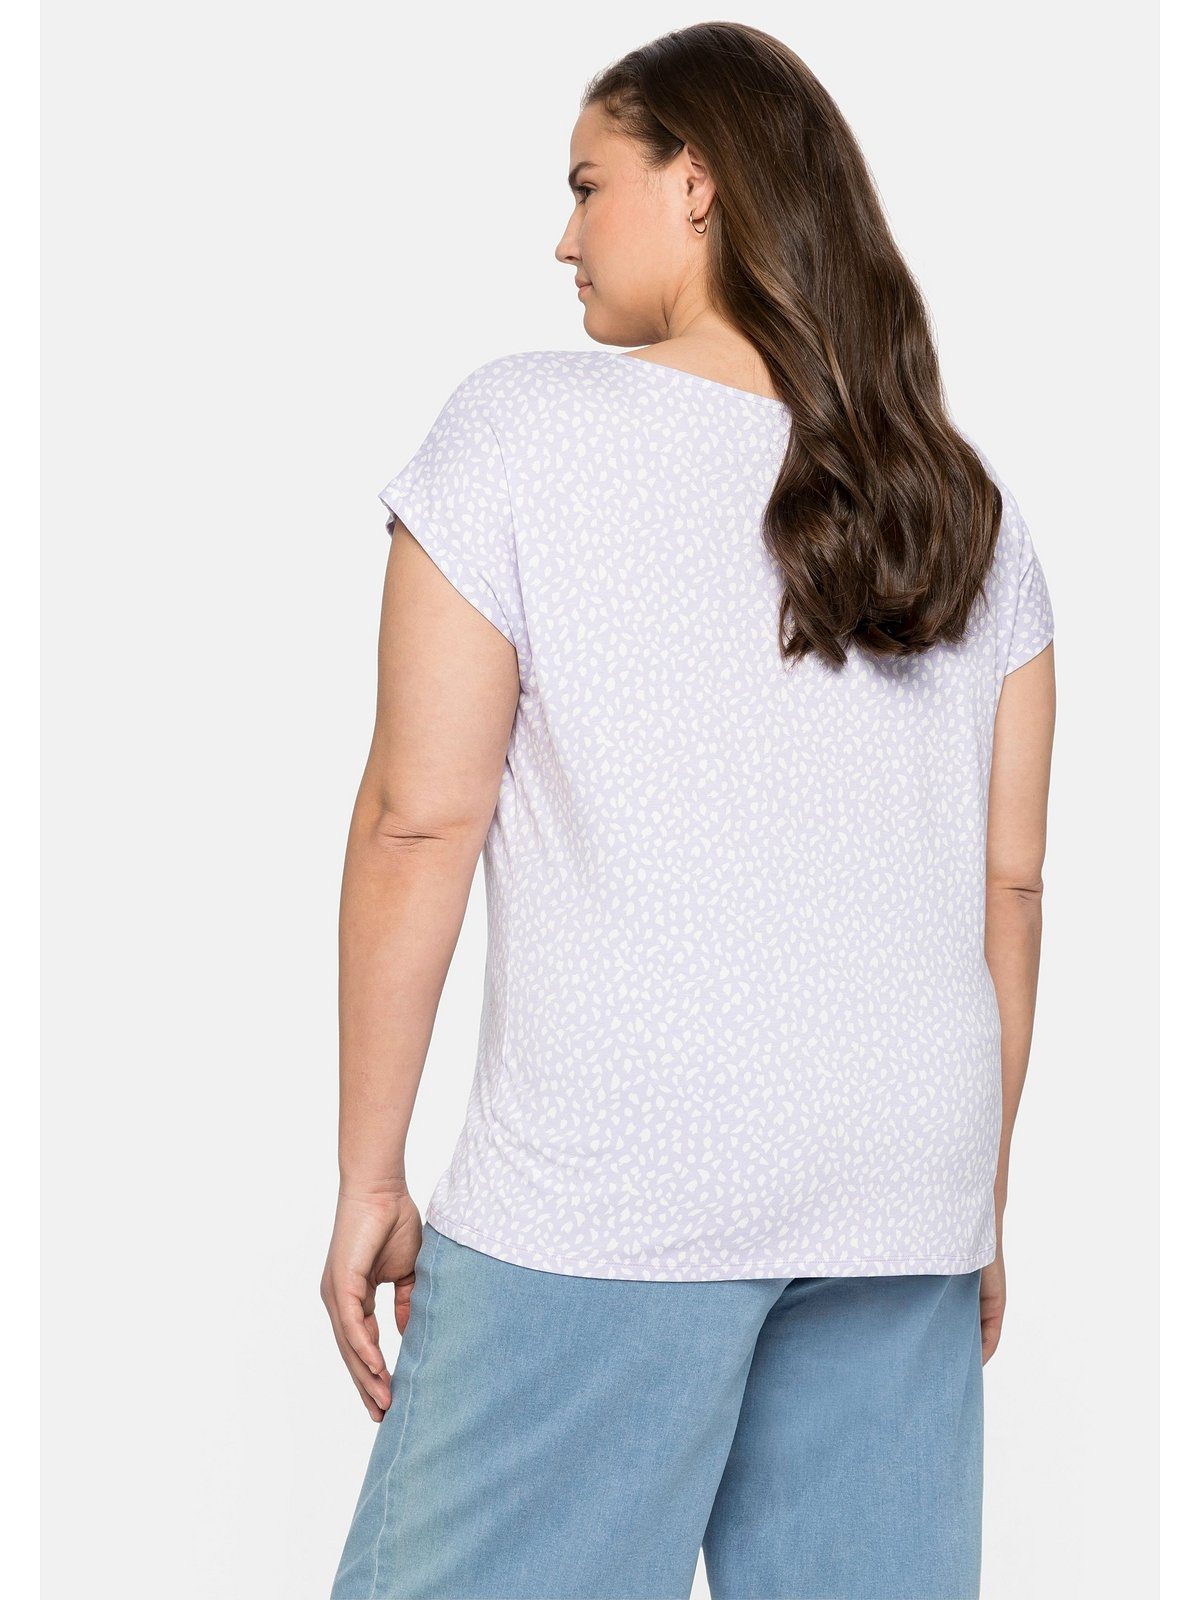 Sheego T-Shirt Große Größen mit Falten Alloverdruck gelegten und